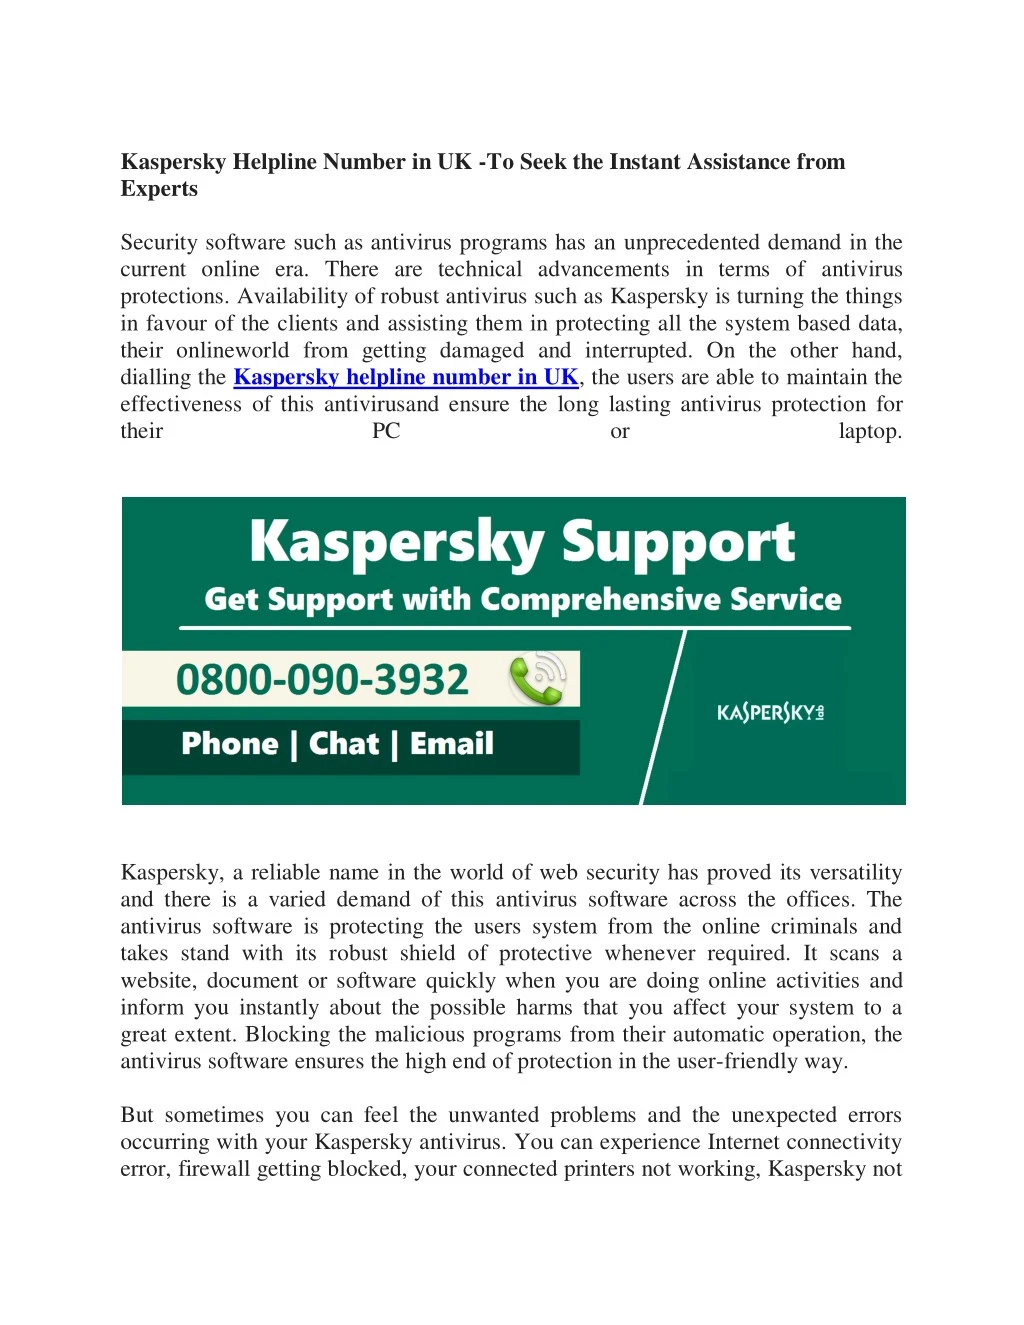 kaspersky helpline number in uk to seek